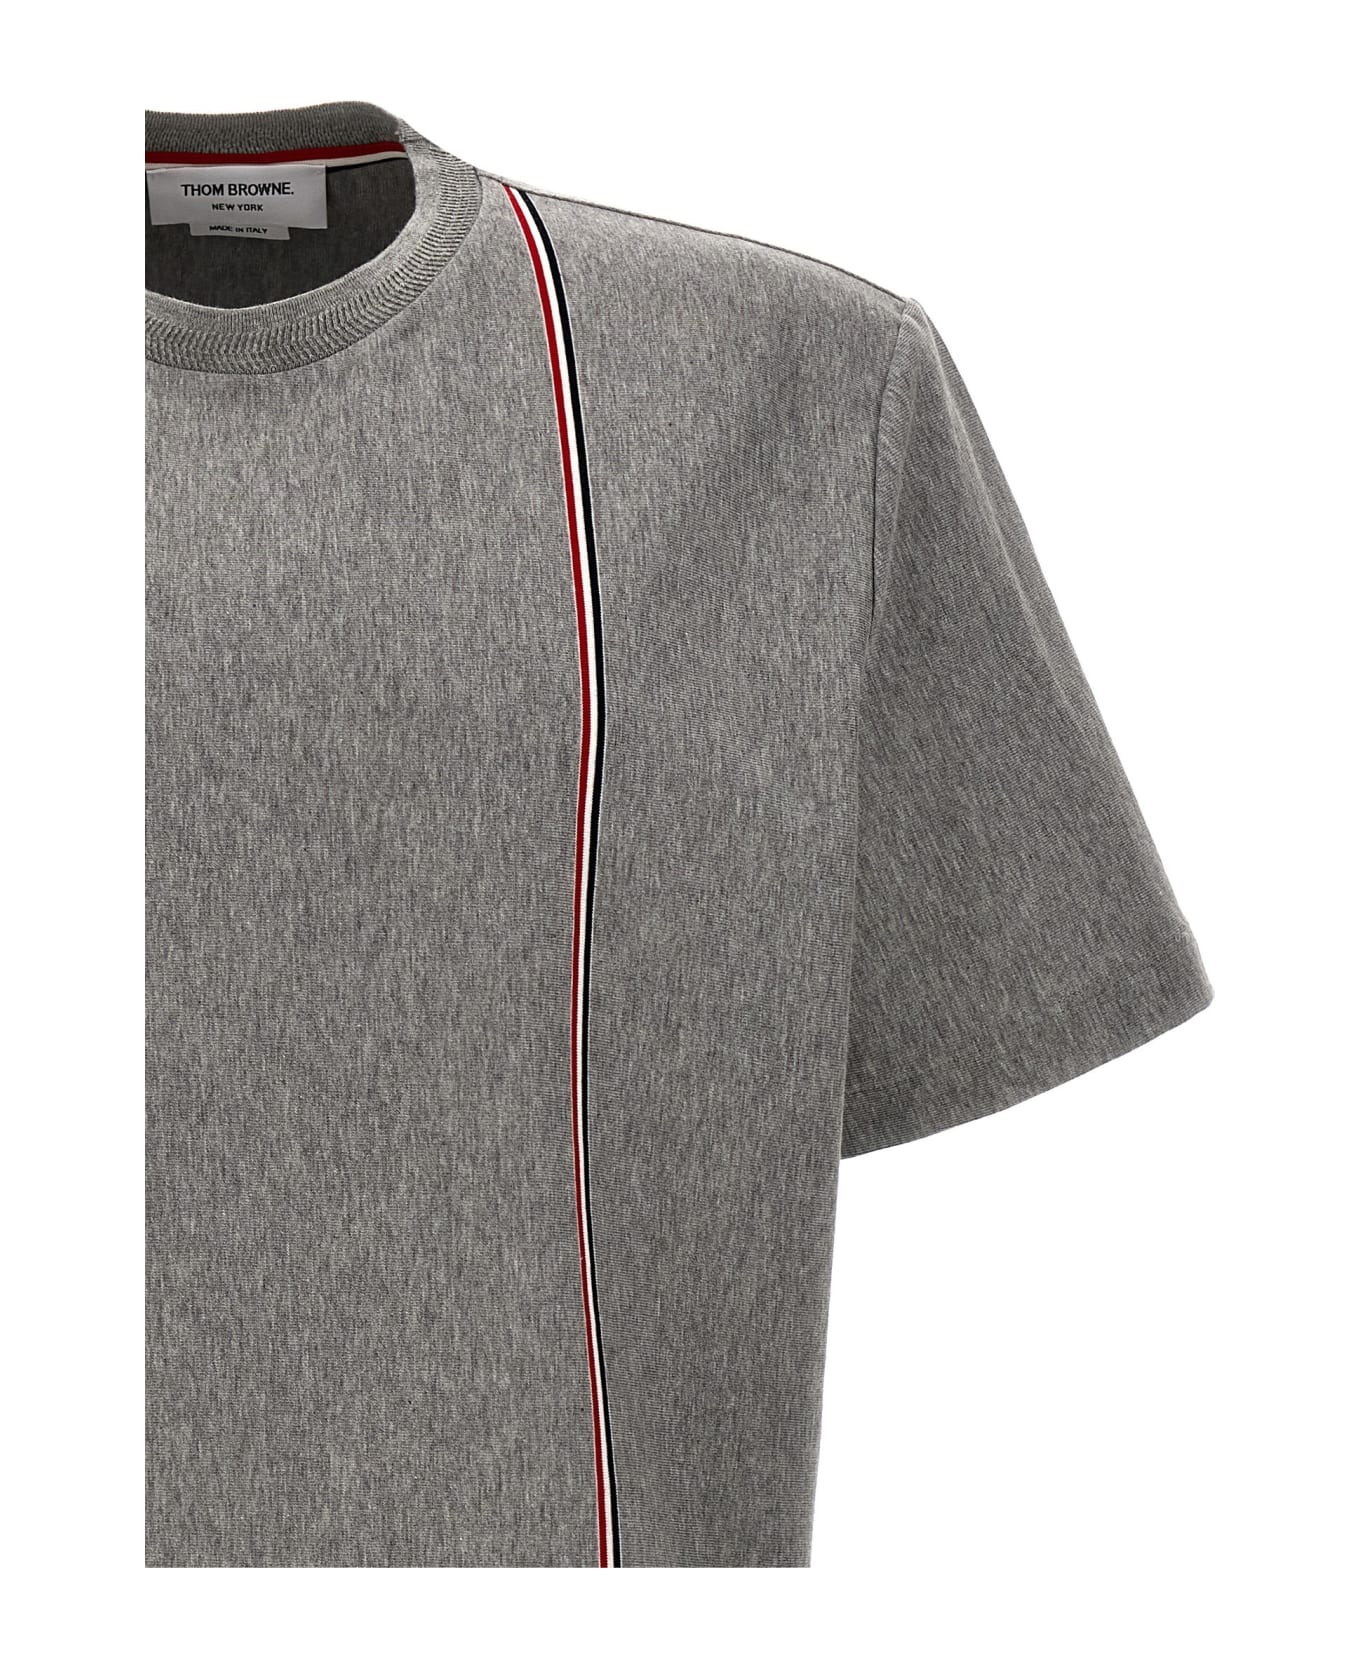 Thom Browne 'rwb' T-shirt - Gray